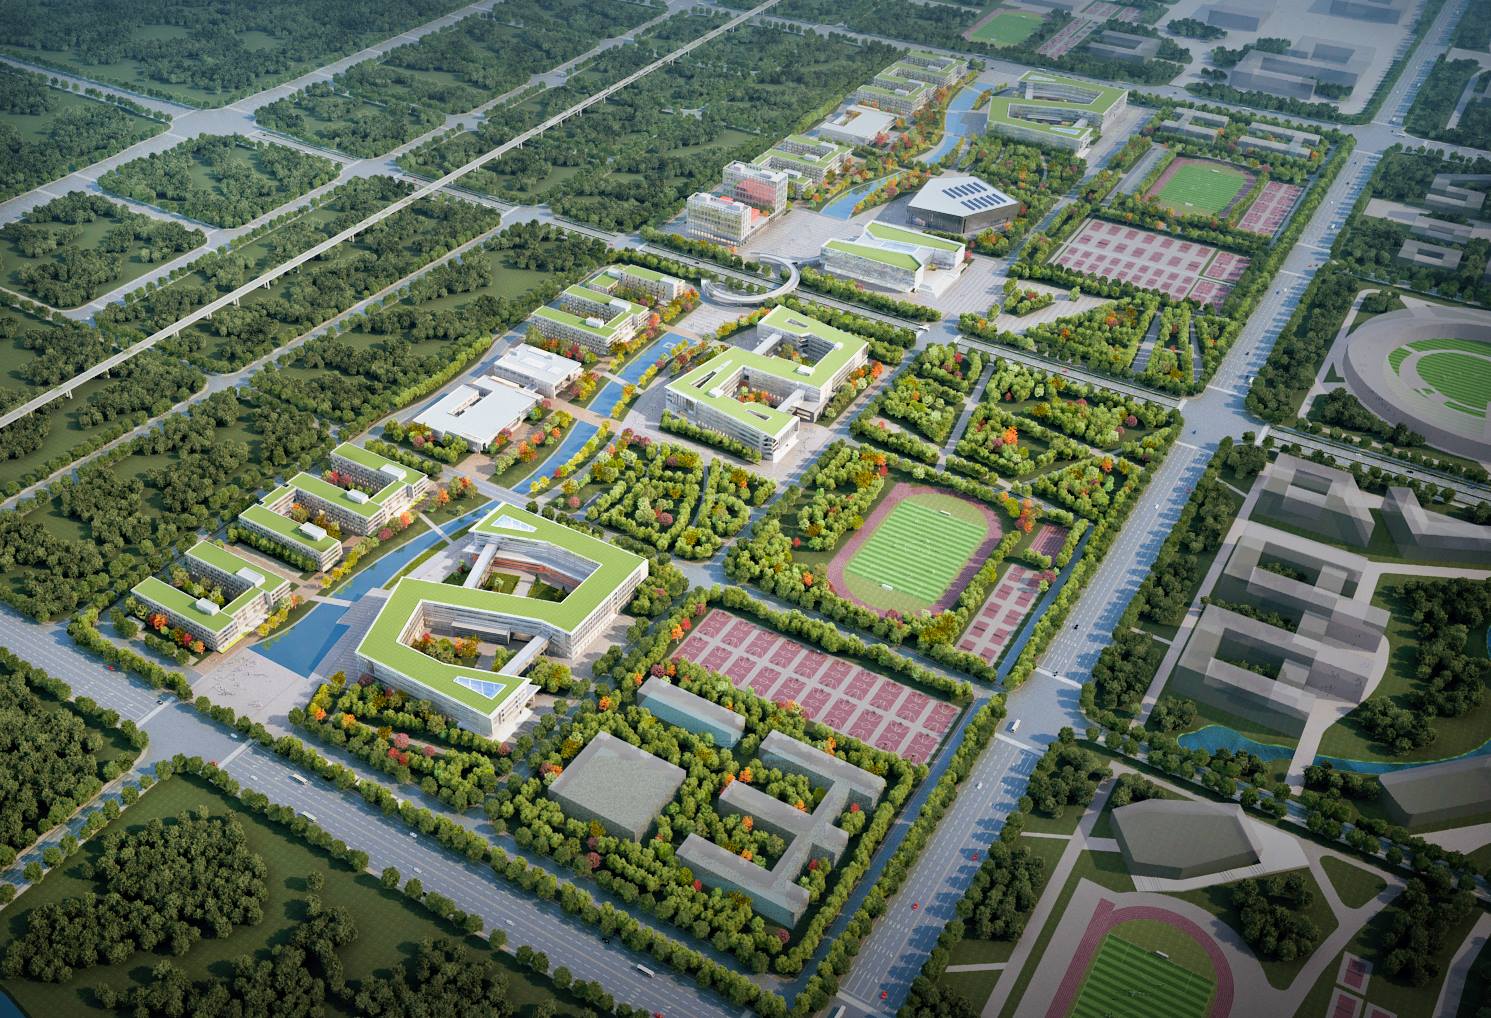 石家庄职业技术学院正定新区新校区一期项目效果图1.jpg